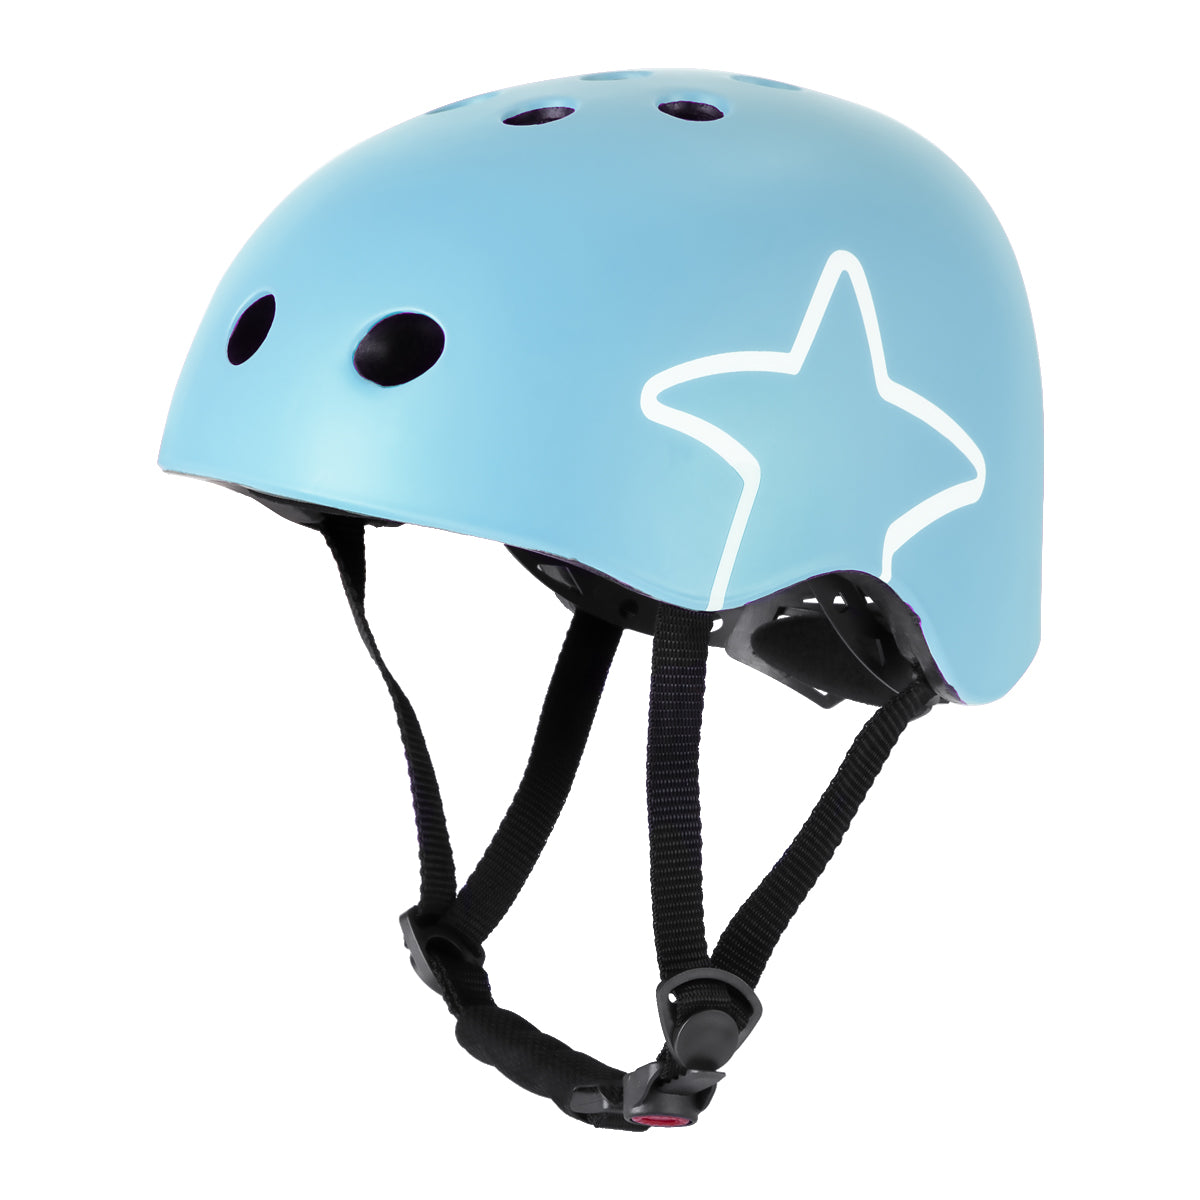 JOYSTAR Starry Kids Bike Helmet for Ages 3-8 Boys Girls